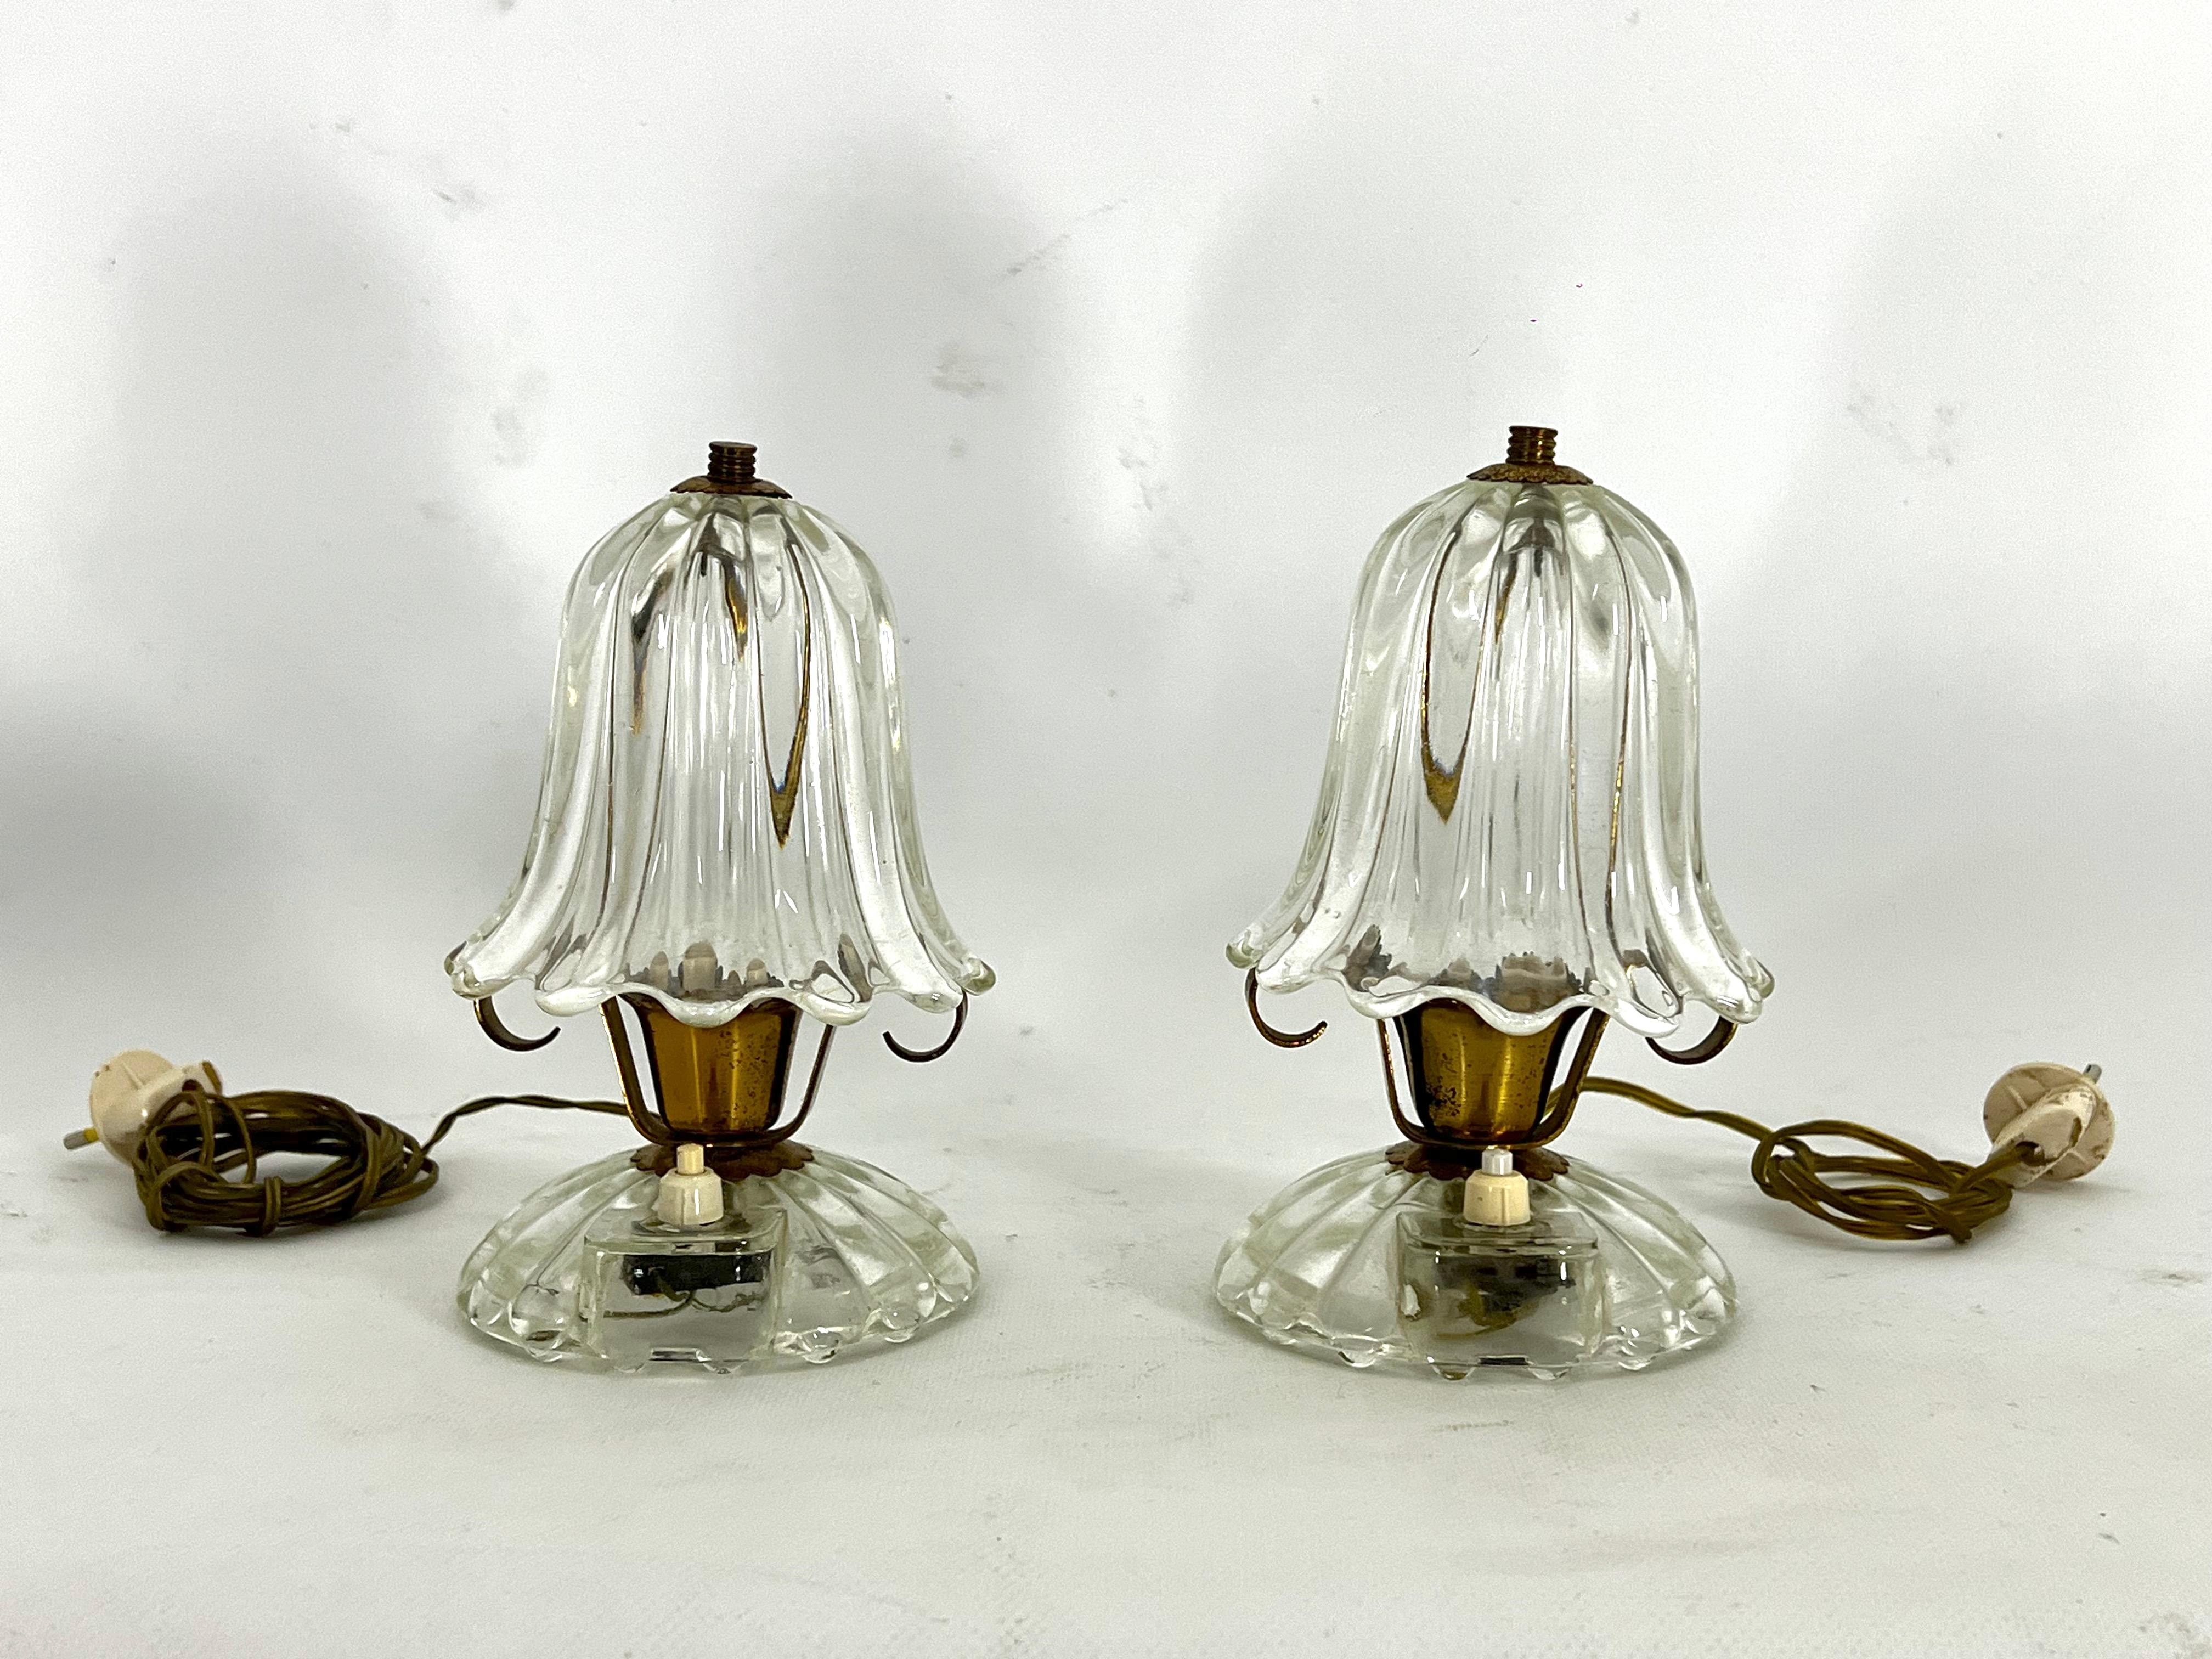 Satz von zwei kleinen Tischlampen, entworfen von Ercole Barovier in den 40er Jahren.
Guter Vintage-Zustand mit normalen Alters- und Gebrauchsspuren, aber einem Riss in einer Messingfassung, wie auf den Bildern zu sehen. Gläser ohne Mängel. Voll